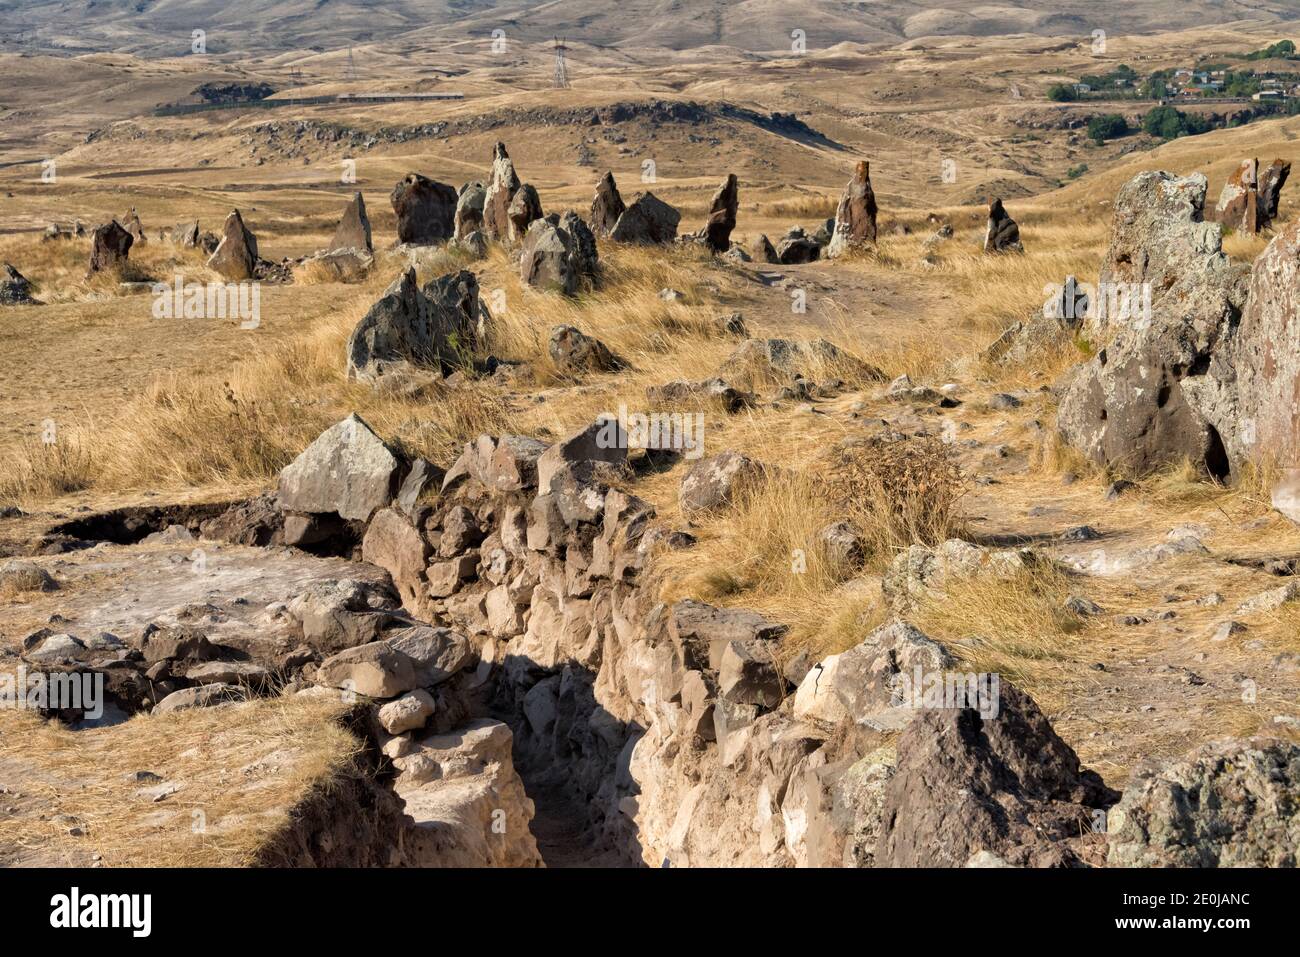 Stonehenge armenio, Zorats Karer (también llamado Karahunj, Qarahunj o Carahunge y Carenish), un sitio arqueológico prehistórico cerca de Sisian, Syunik PR Foto de stock